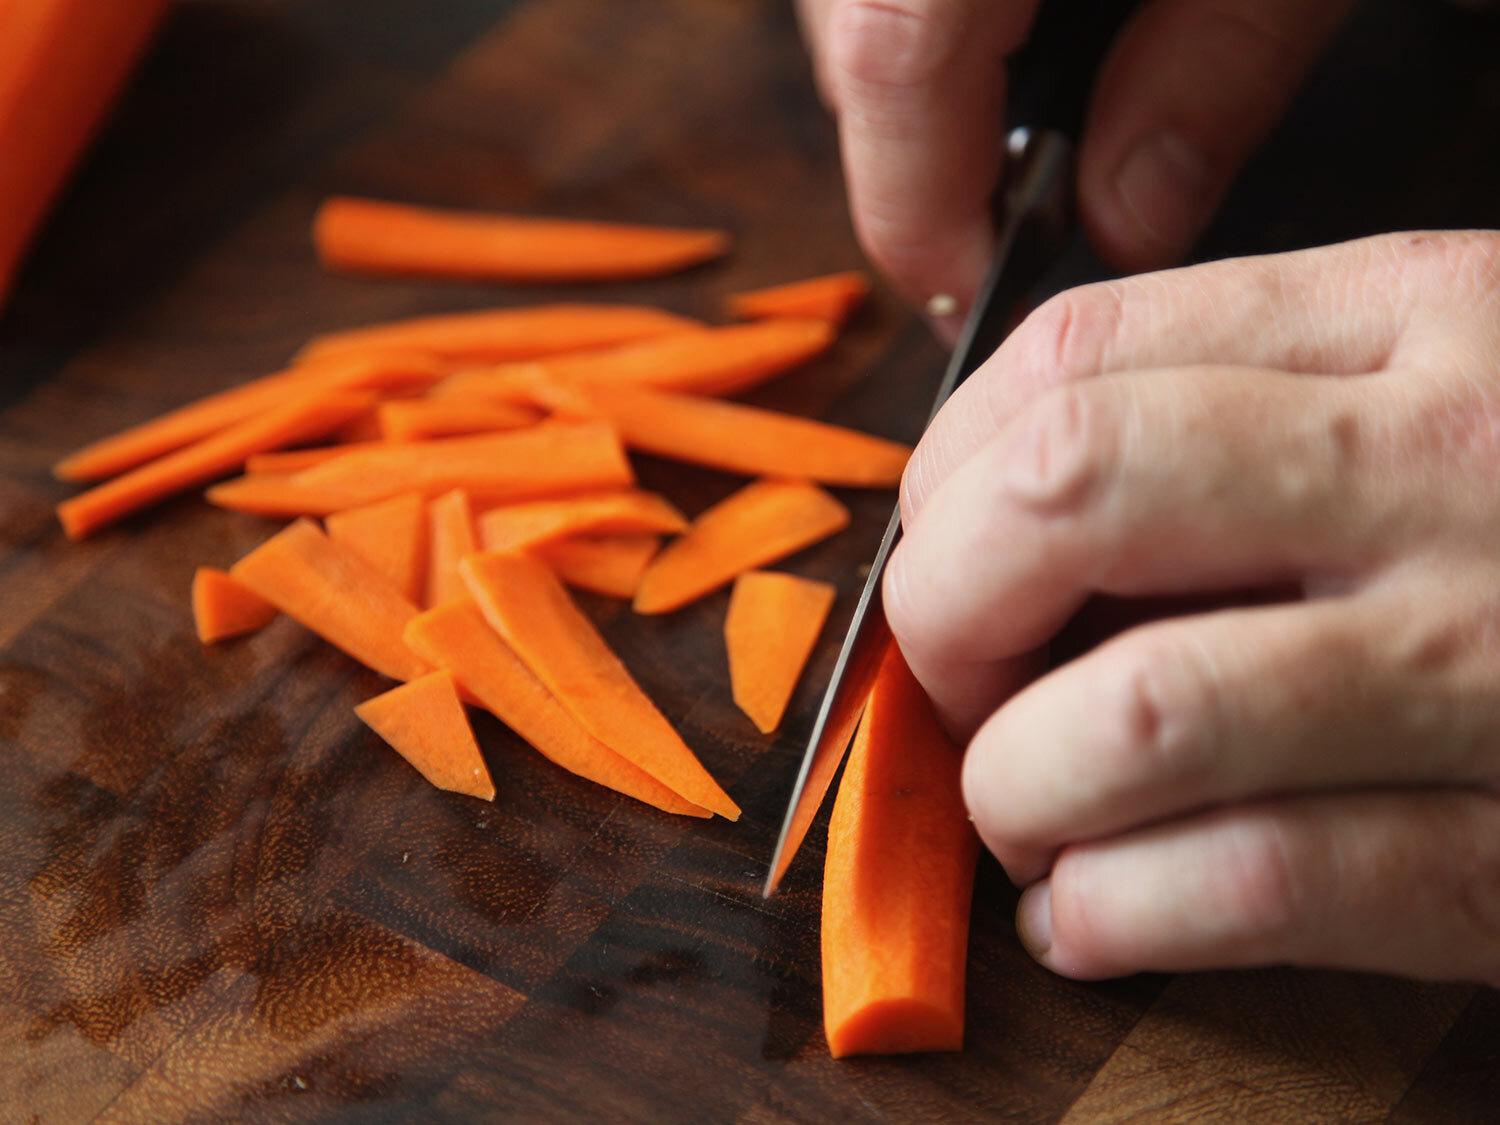 Trancher finement les carottes sur une planche à découper